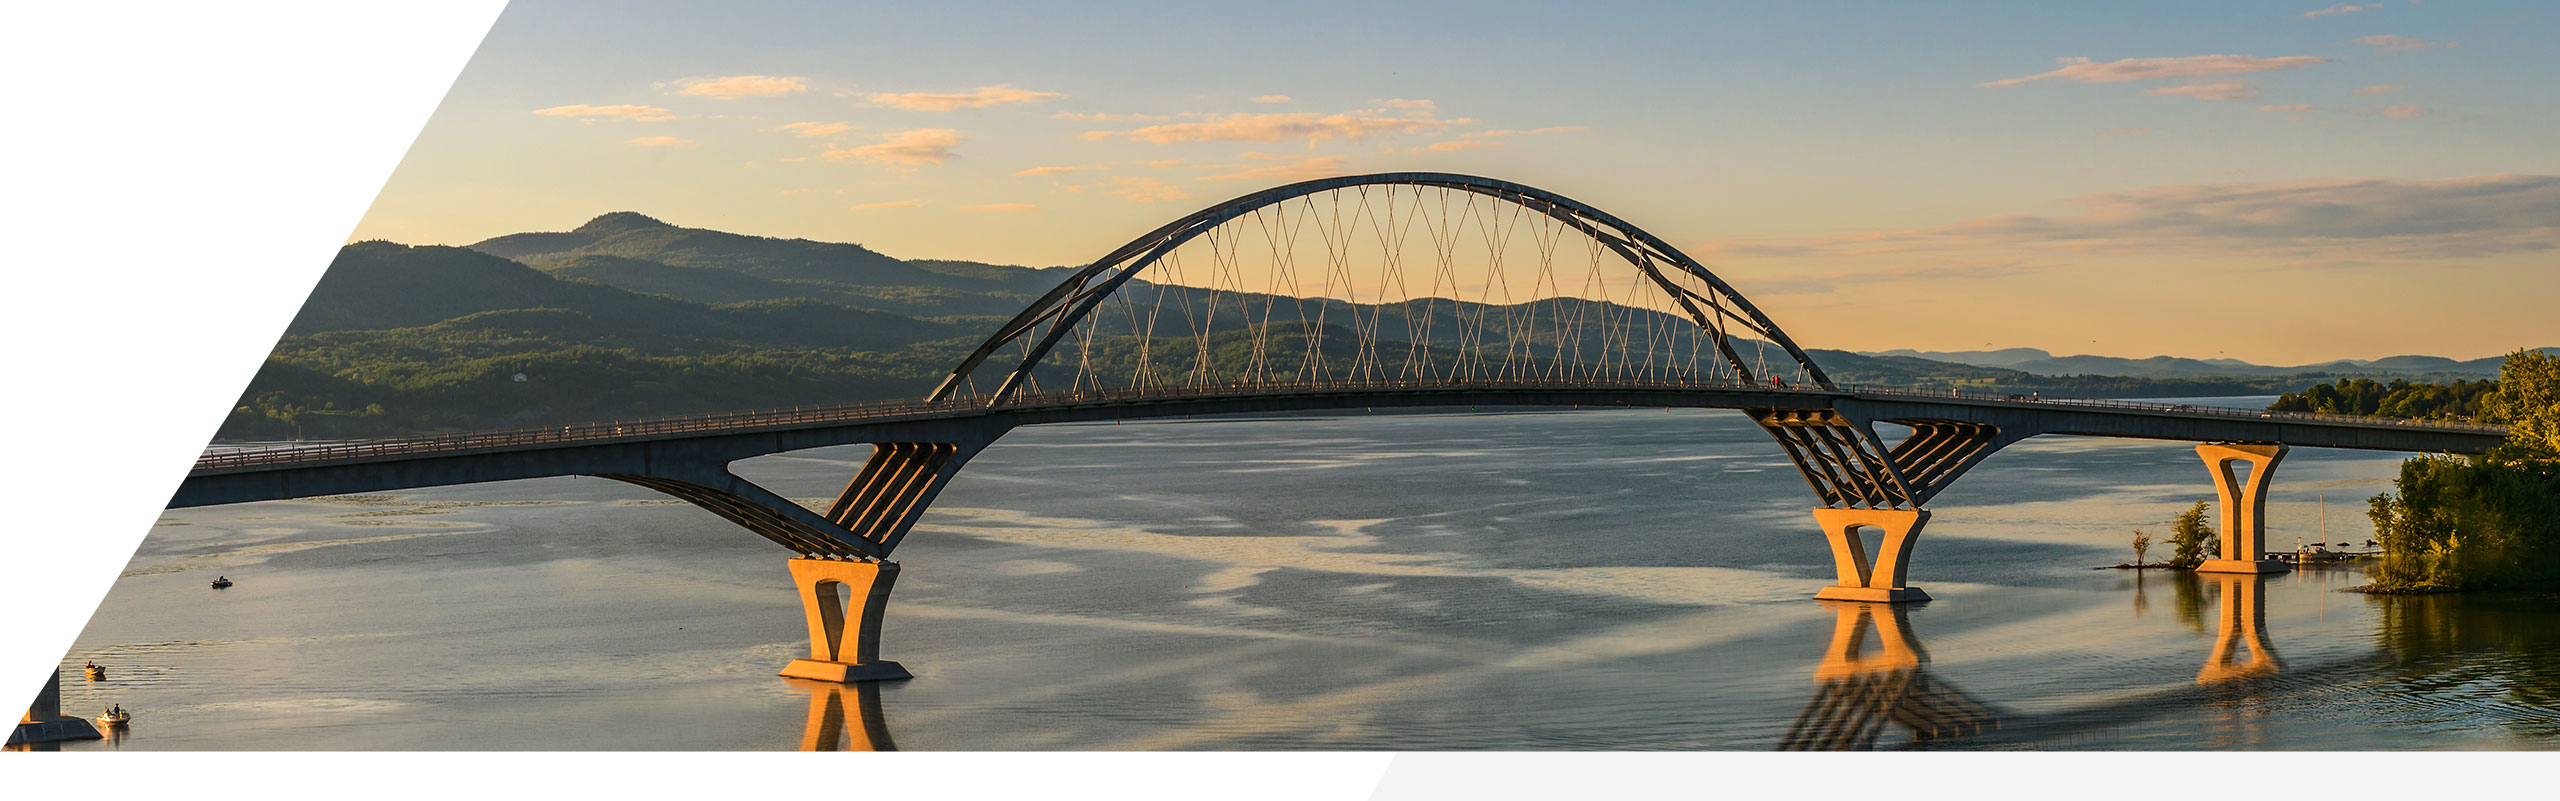 Un pont transfrontalier reliant le Québec, le Canada et la Vallée du lac Champlain, aux États-Unis.